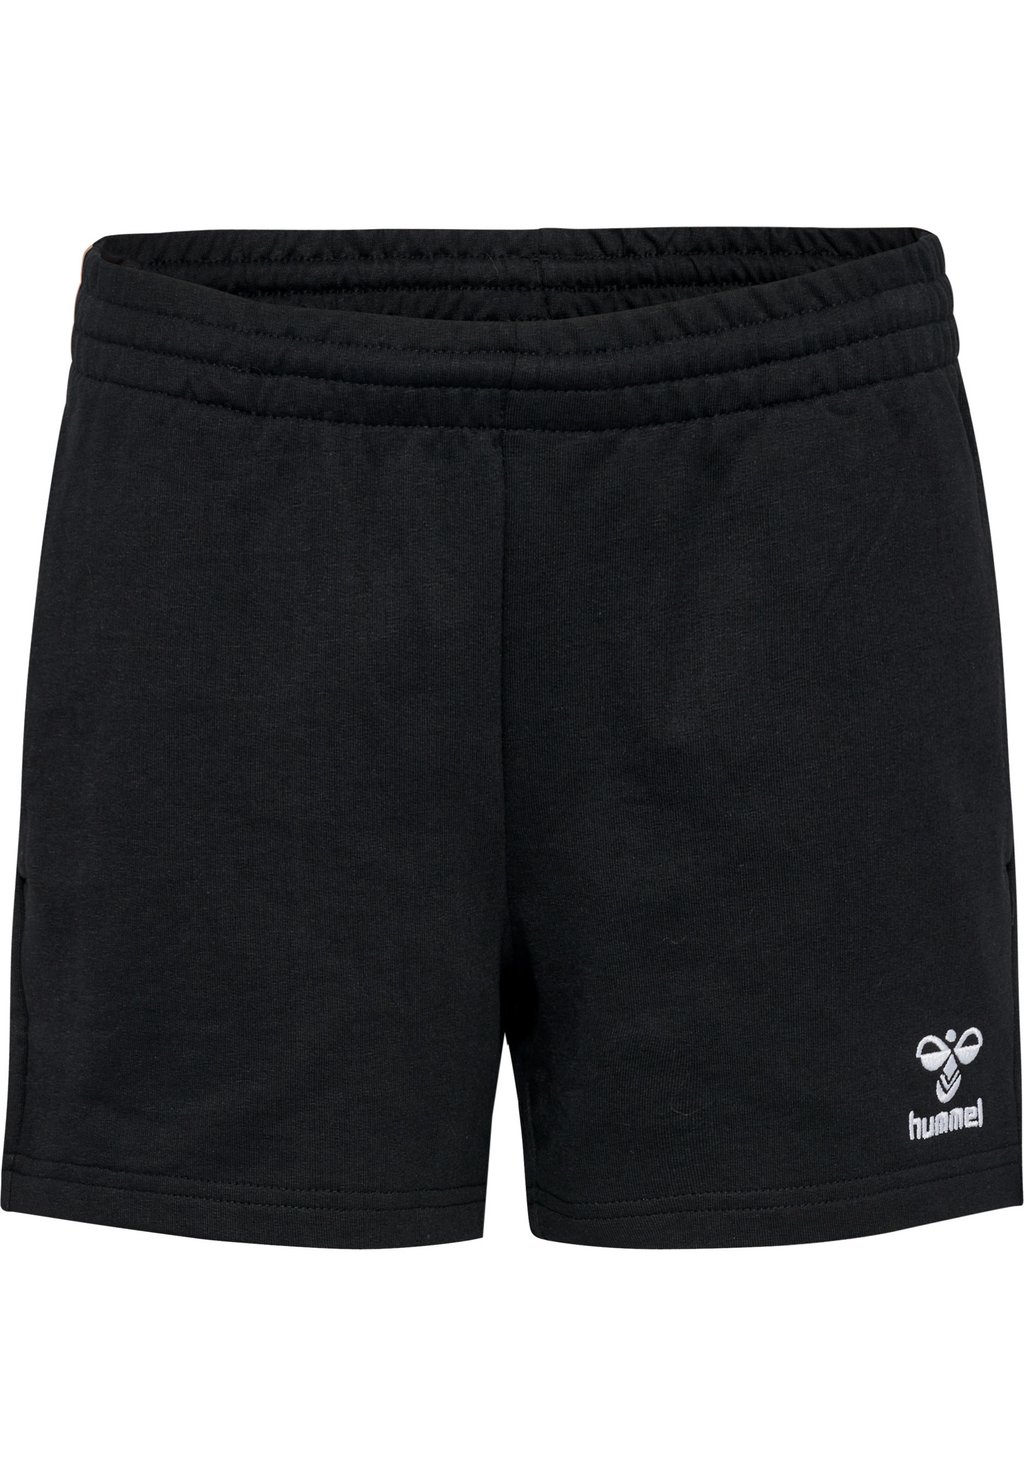 короткие спортивные штаны hummel цвет marine Короткие спортивные штаны Hummel, цвет black